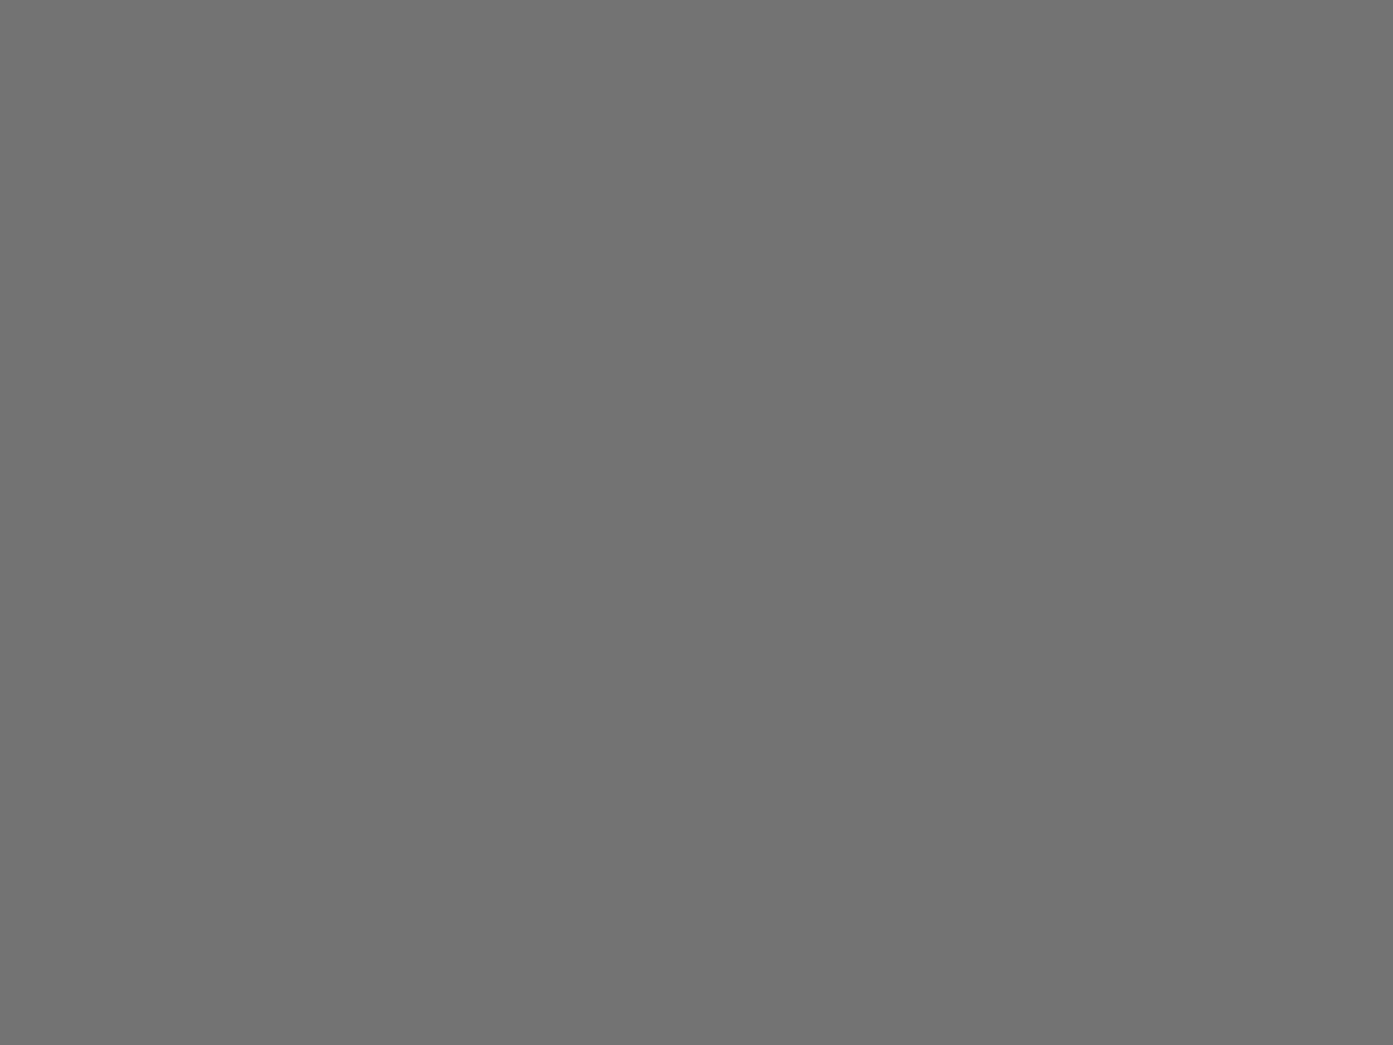 Марина Цветаева с дочерью Алей и мужем — публицистом Сергеем Эфроном. Прага, Чехия, 1922 год. Фотография: Калужский объединенный музей-заповедник, Калуга